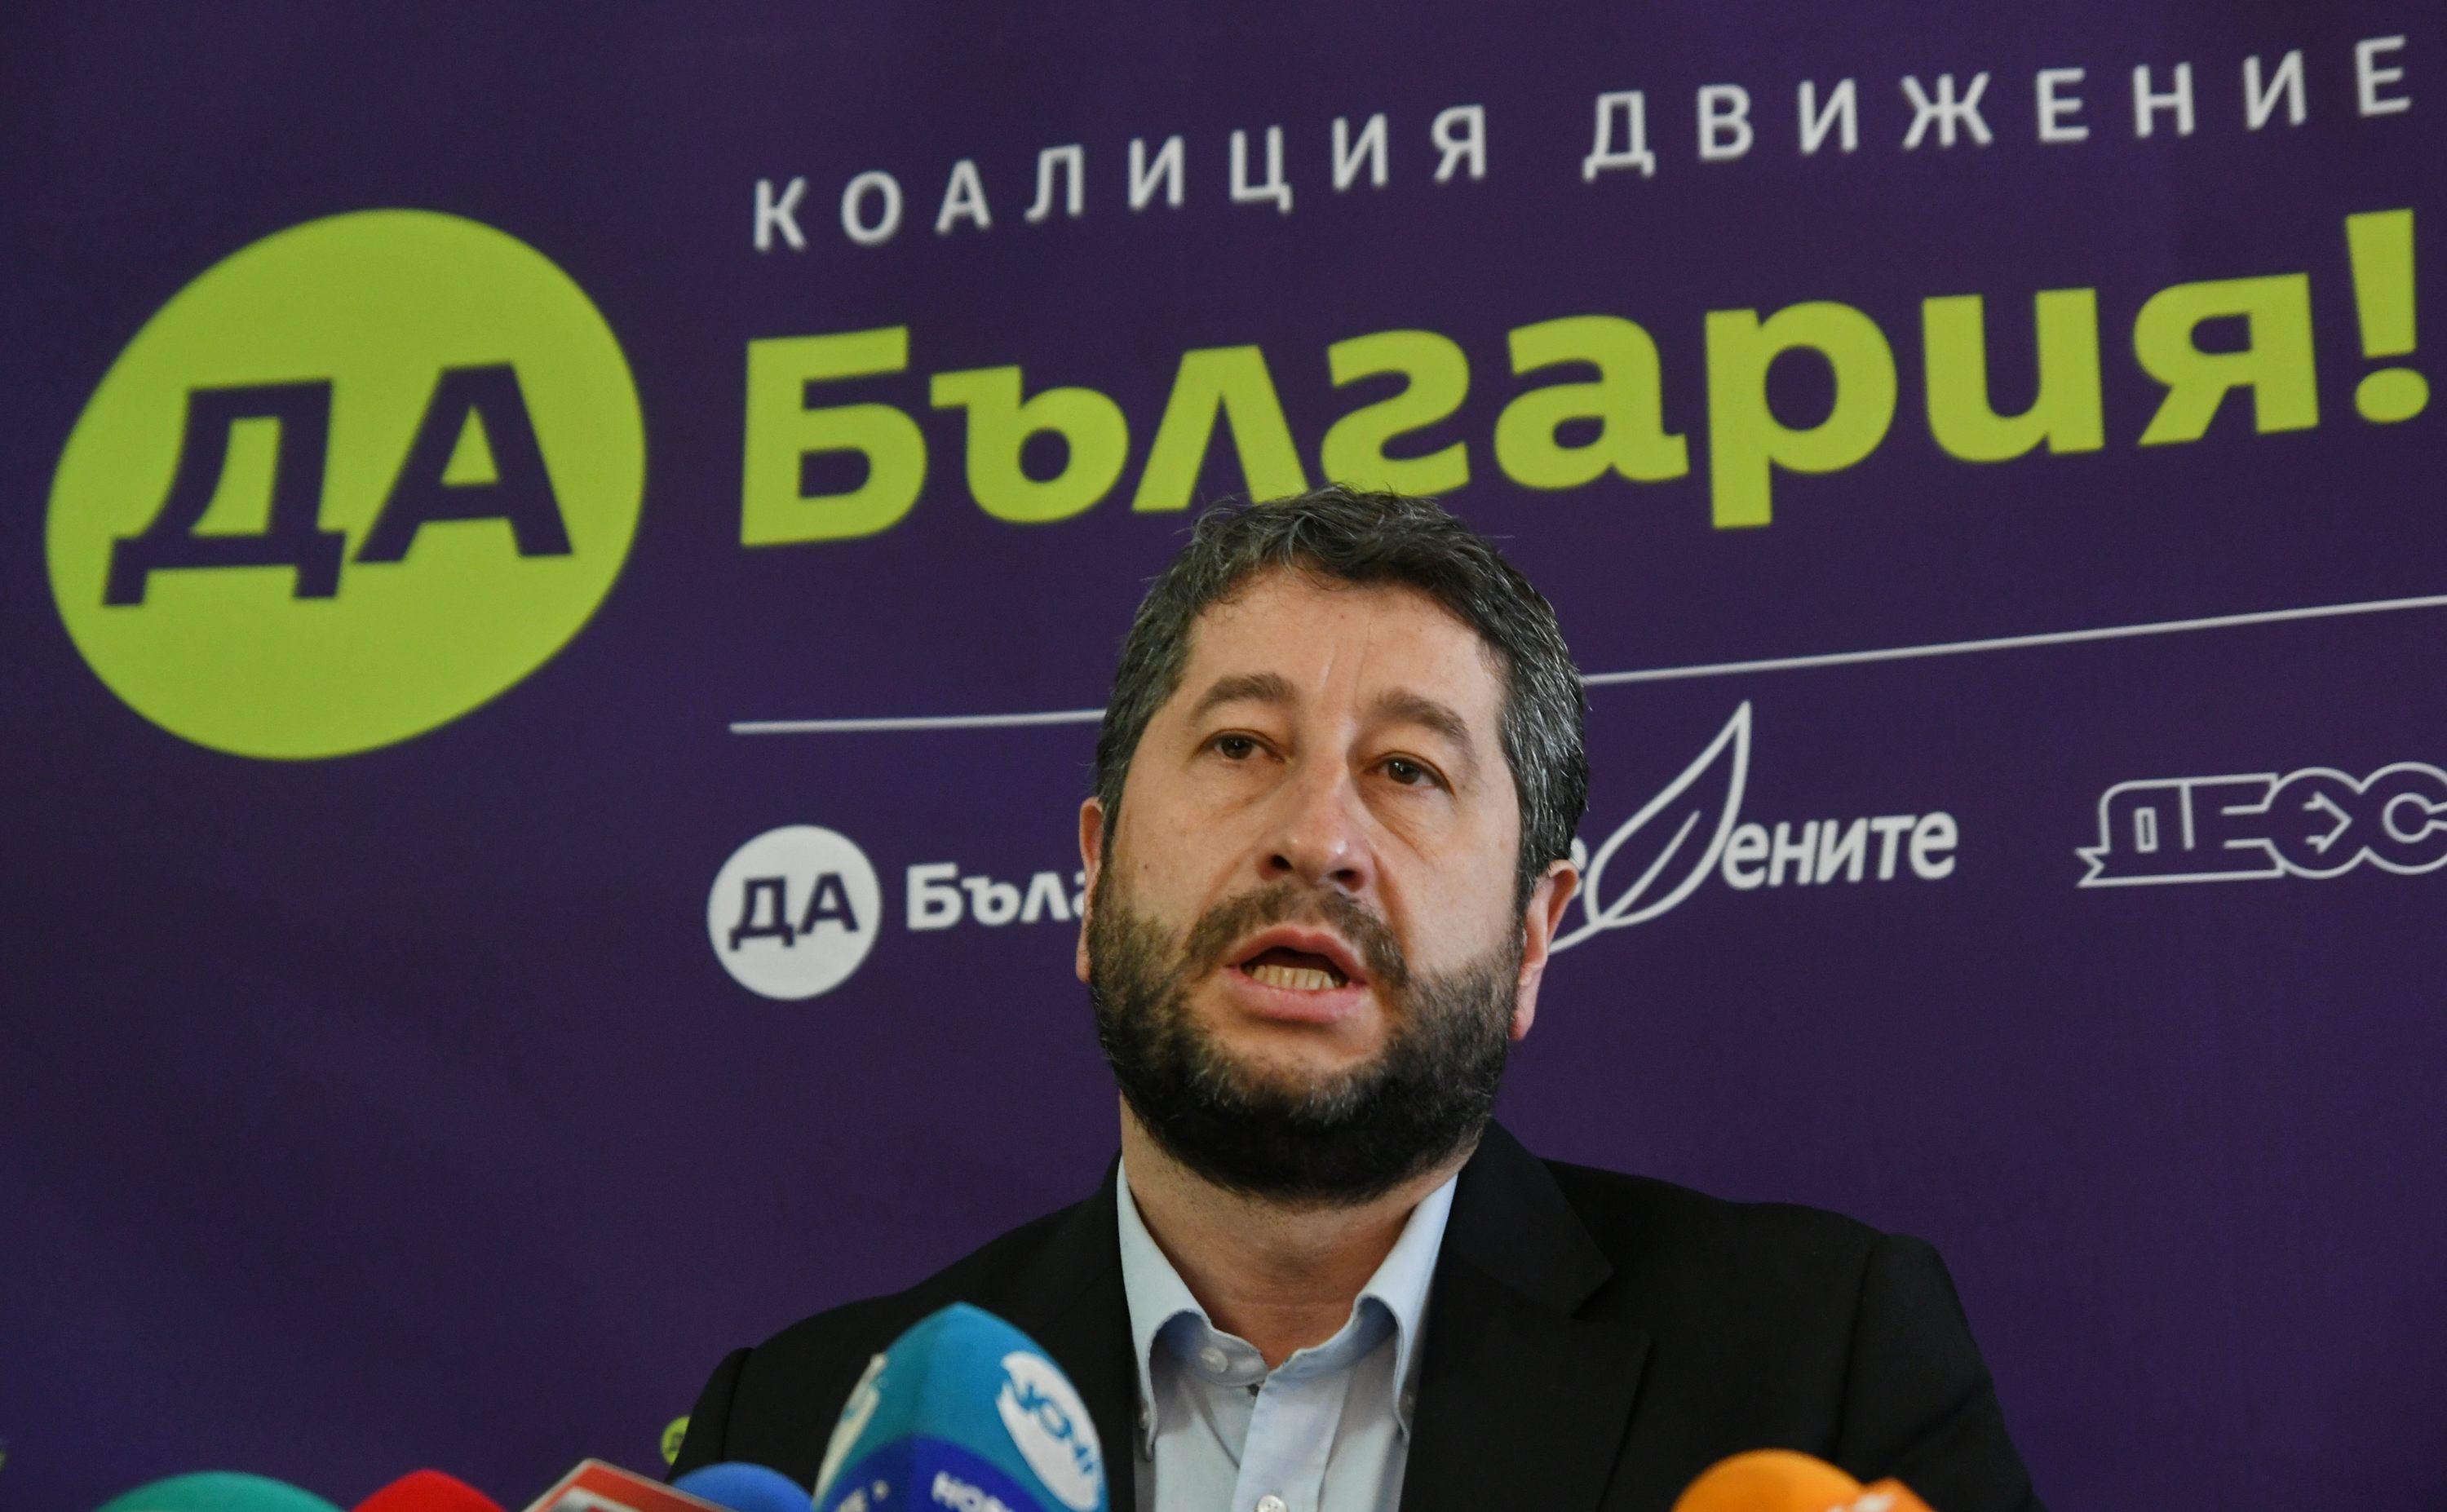 Христо Иванов призова Борисов да не става пак премиер